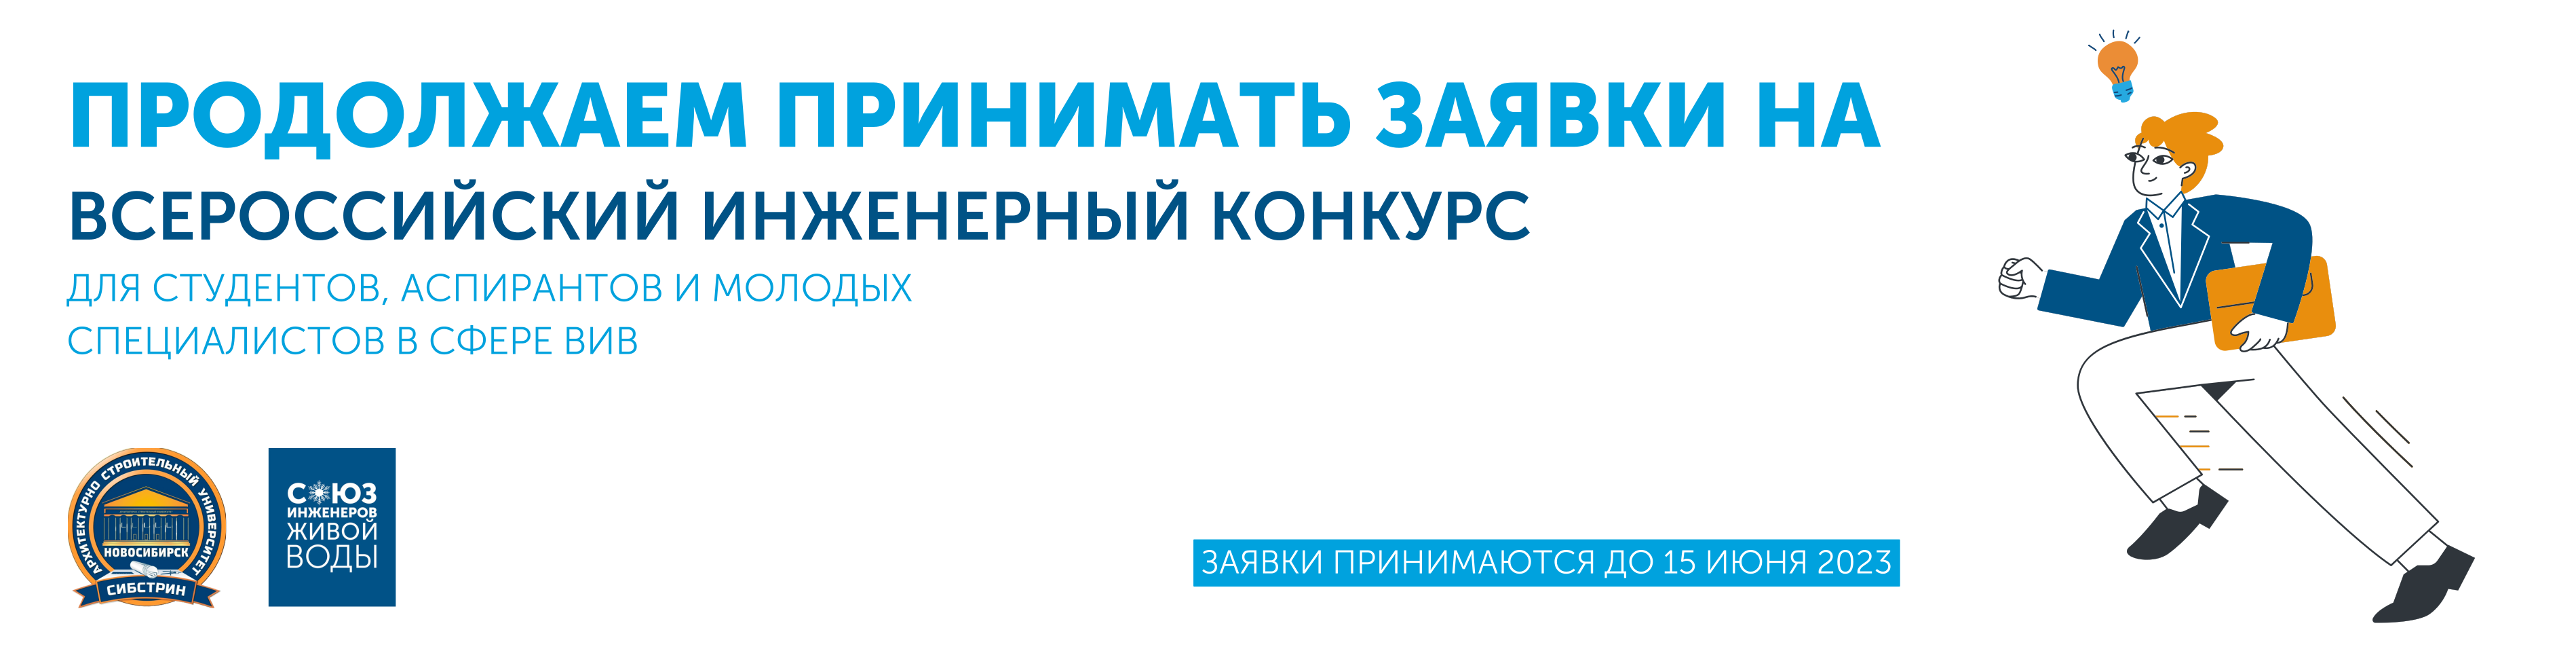 Прием заявок на Всероссийский инженерный конкурс для студентов, аспирантов и молодых специалистов в сфере водоснабжения и водоотведения продлен до 15 июня